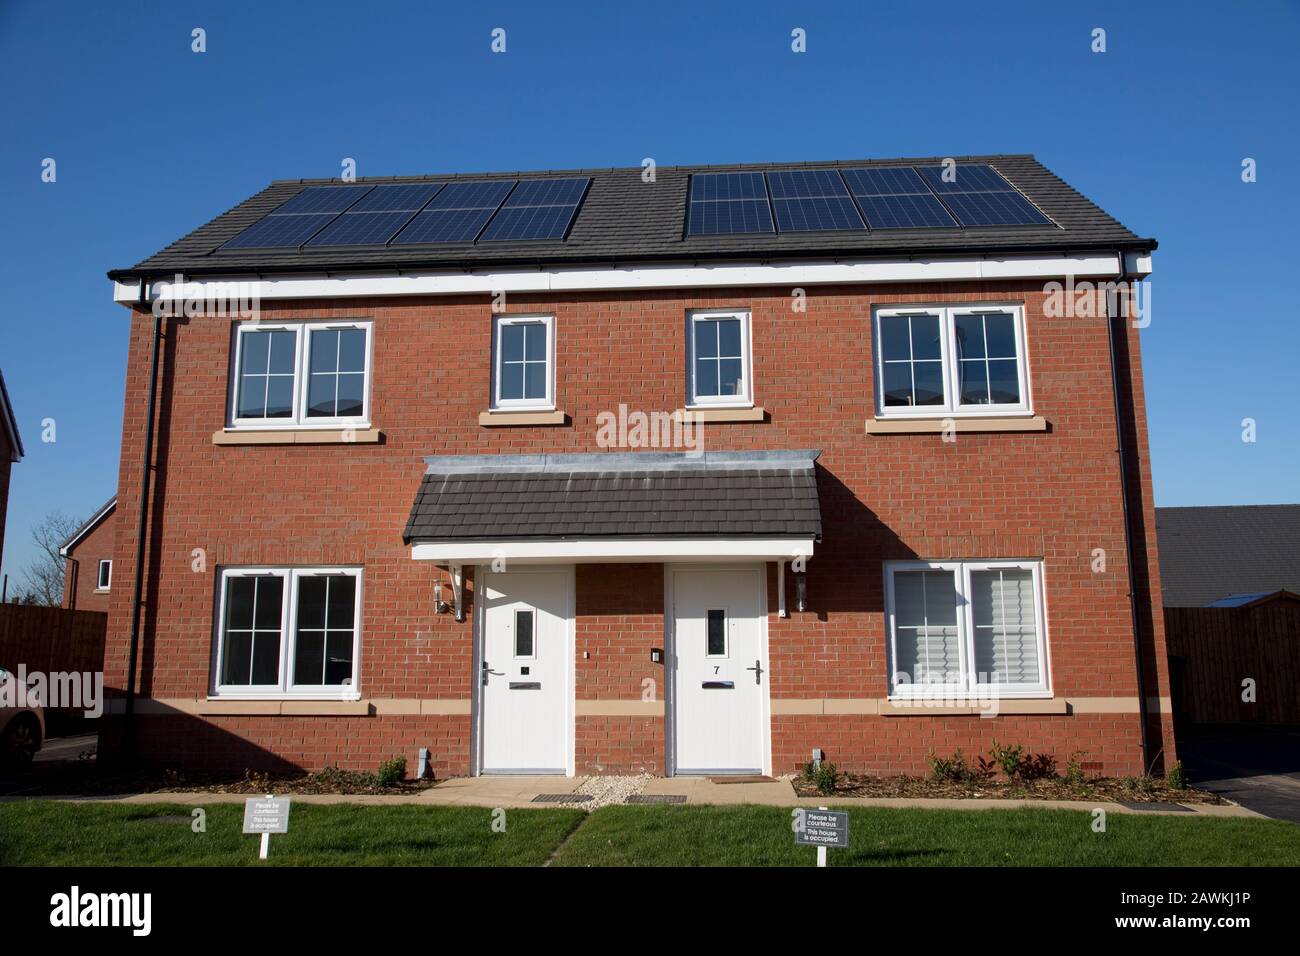 Nuove case in mattoni rossi su un piccolo sviluppo ben definito, ma solo due delle 43 case in loco hanno pannelli fotovoltaici solari. Tnese sono case apparentemente sociali Foto Stock